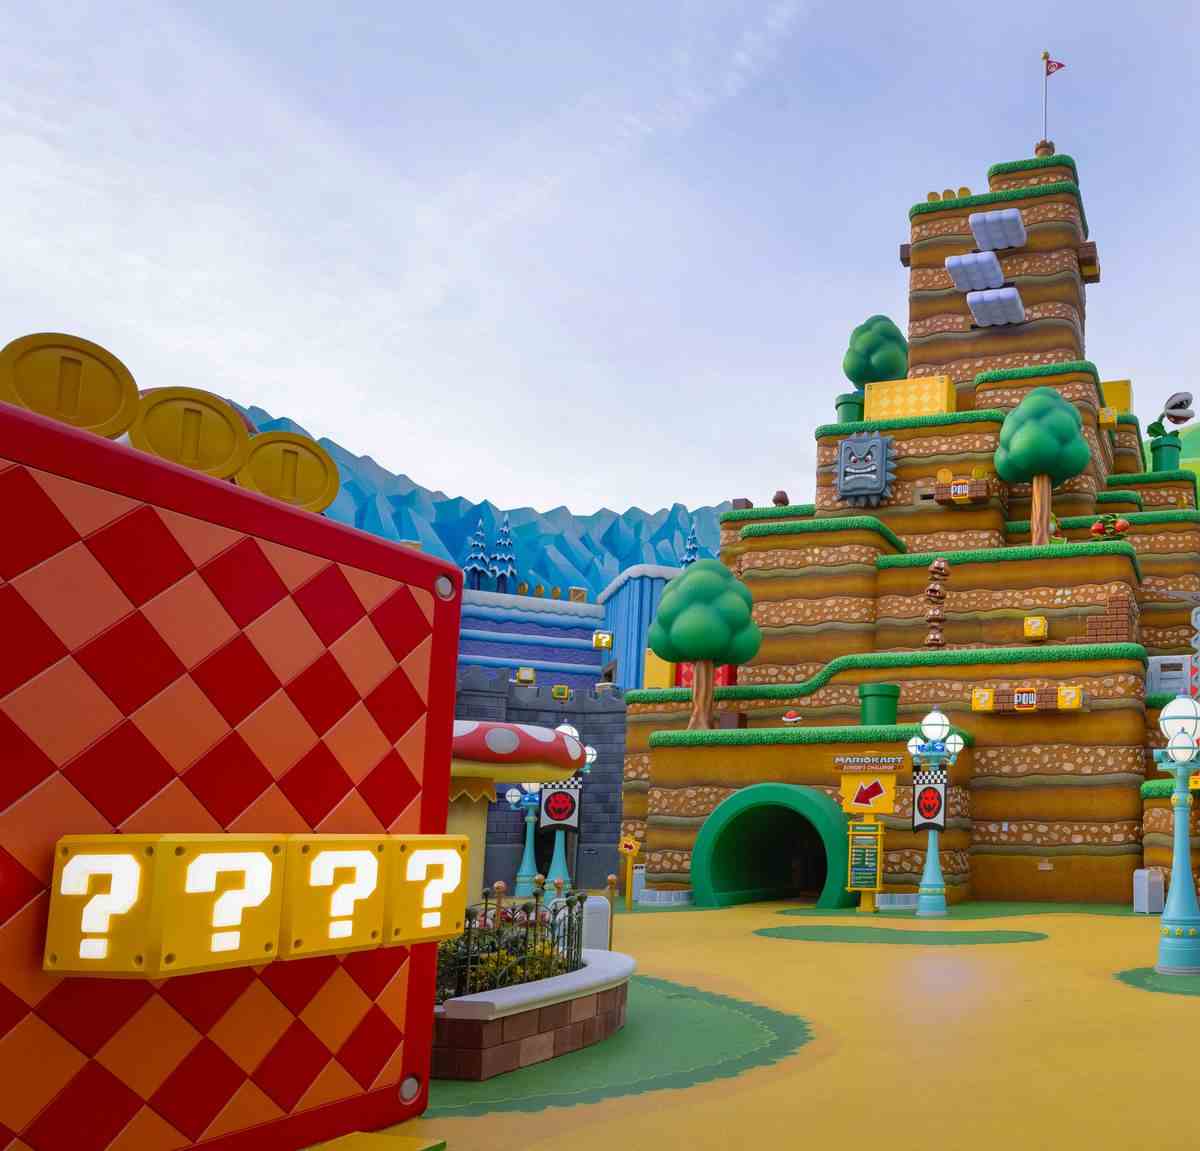 L'entrée de Mario Kart : Bowser's Challenge au Super Nintendo World à Universal Studios Hollywood.  Un grand morceau de décor émule l'apparence d'un niveau de Super Mario Bros., avec beaucoup de blocs de pièces, de blocs POW et de Thwomps tachetés partout.